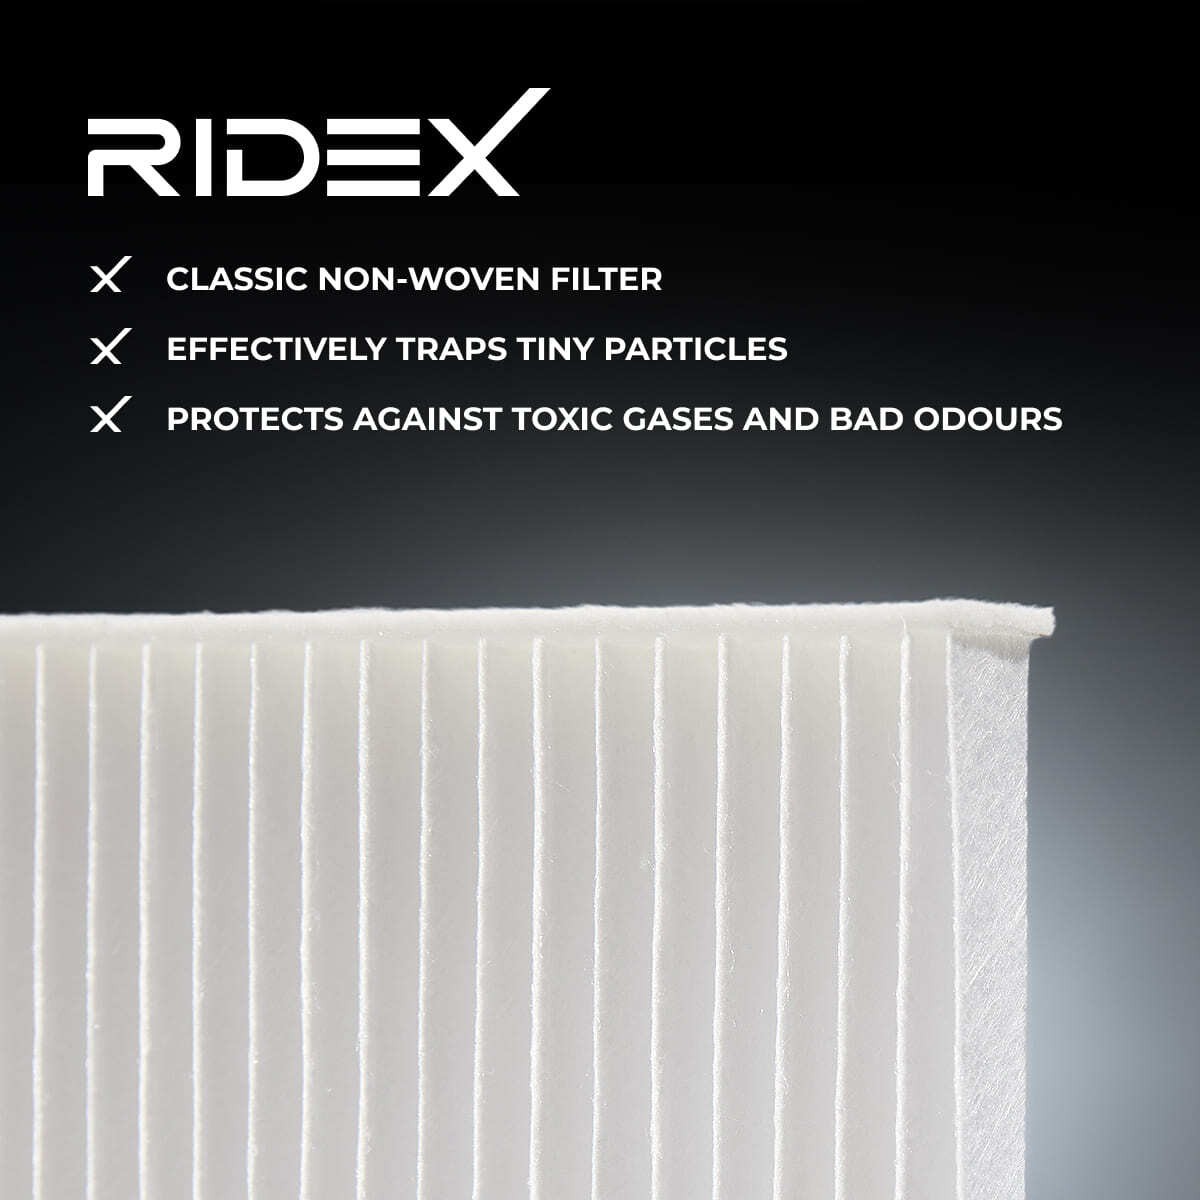 RIDEX Filtro antipolen 424I0645 comprar online